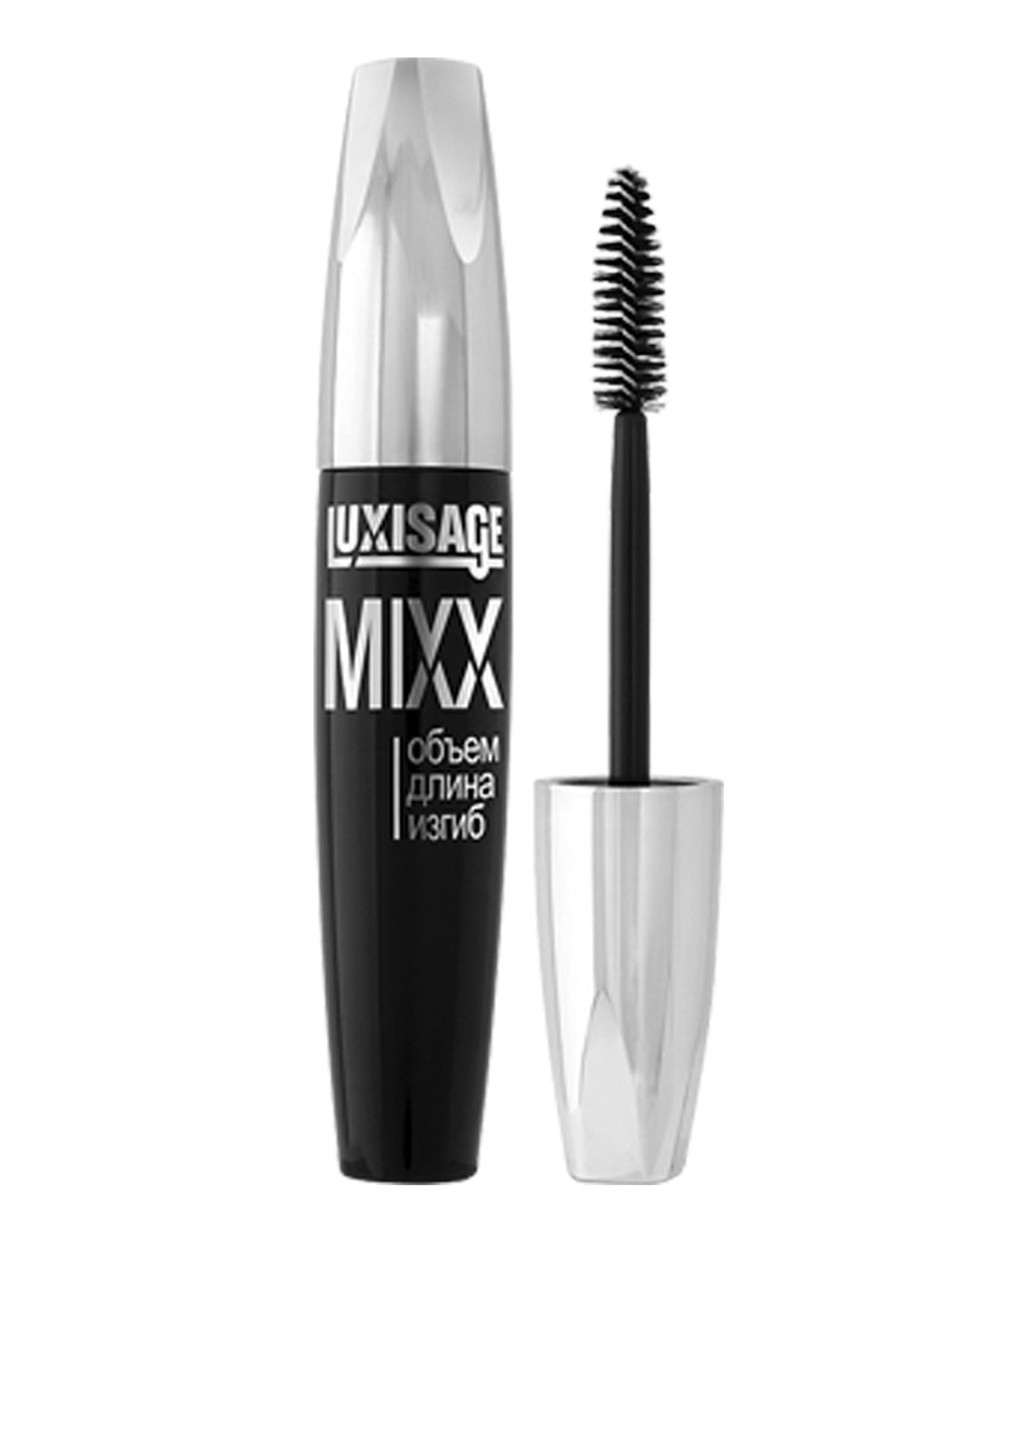 Тушь для ресниц Mixx (black), 12 г Luxvisage (74532024)